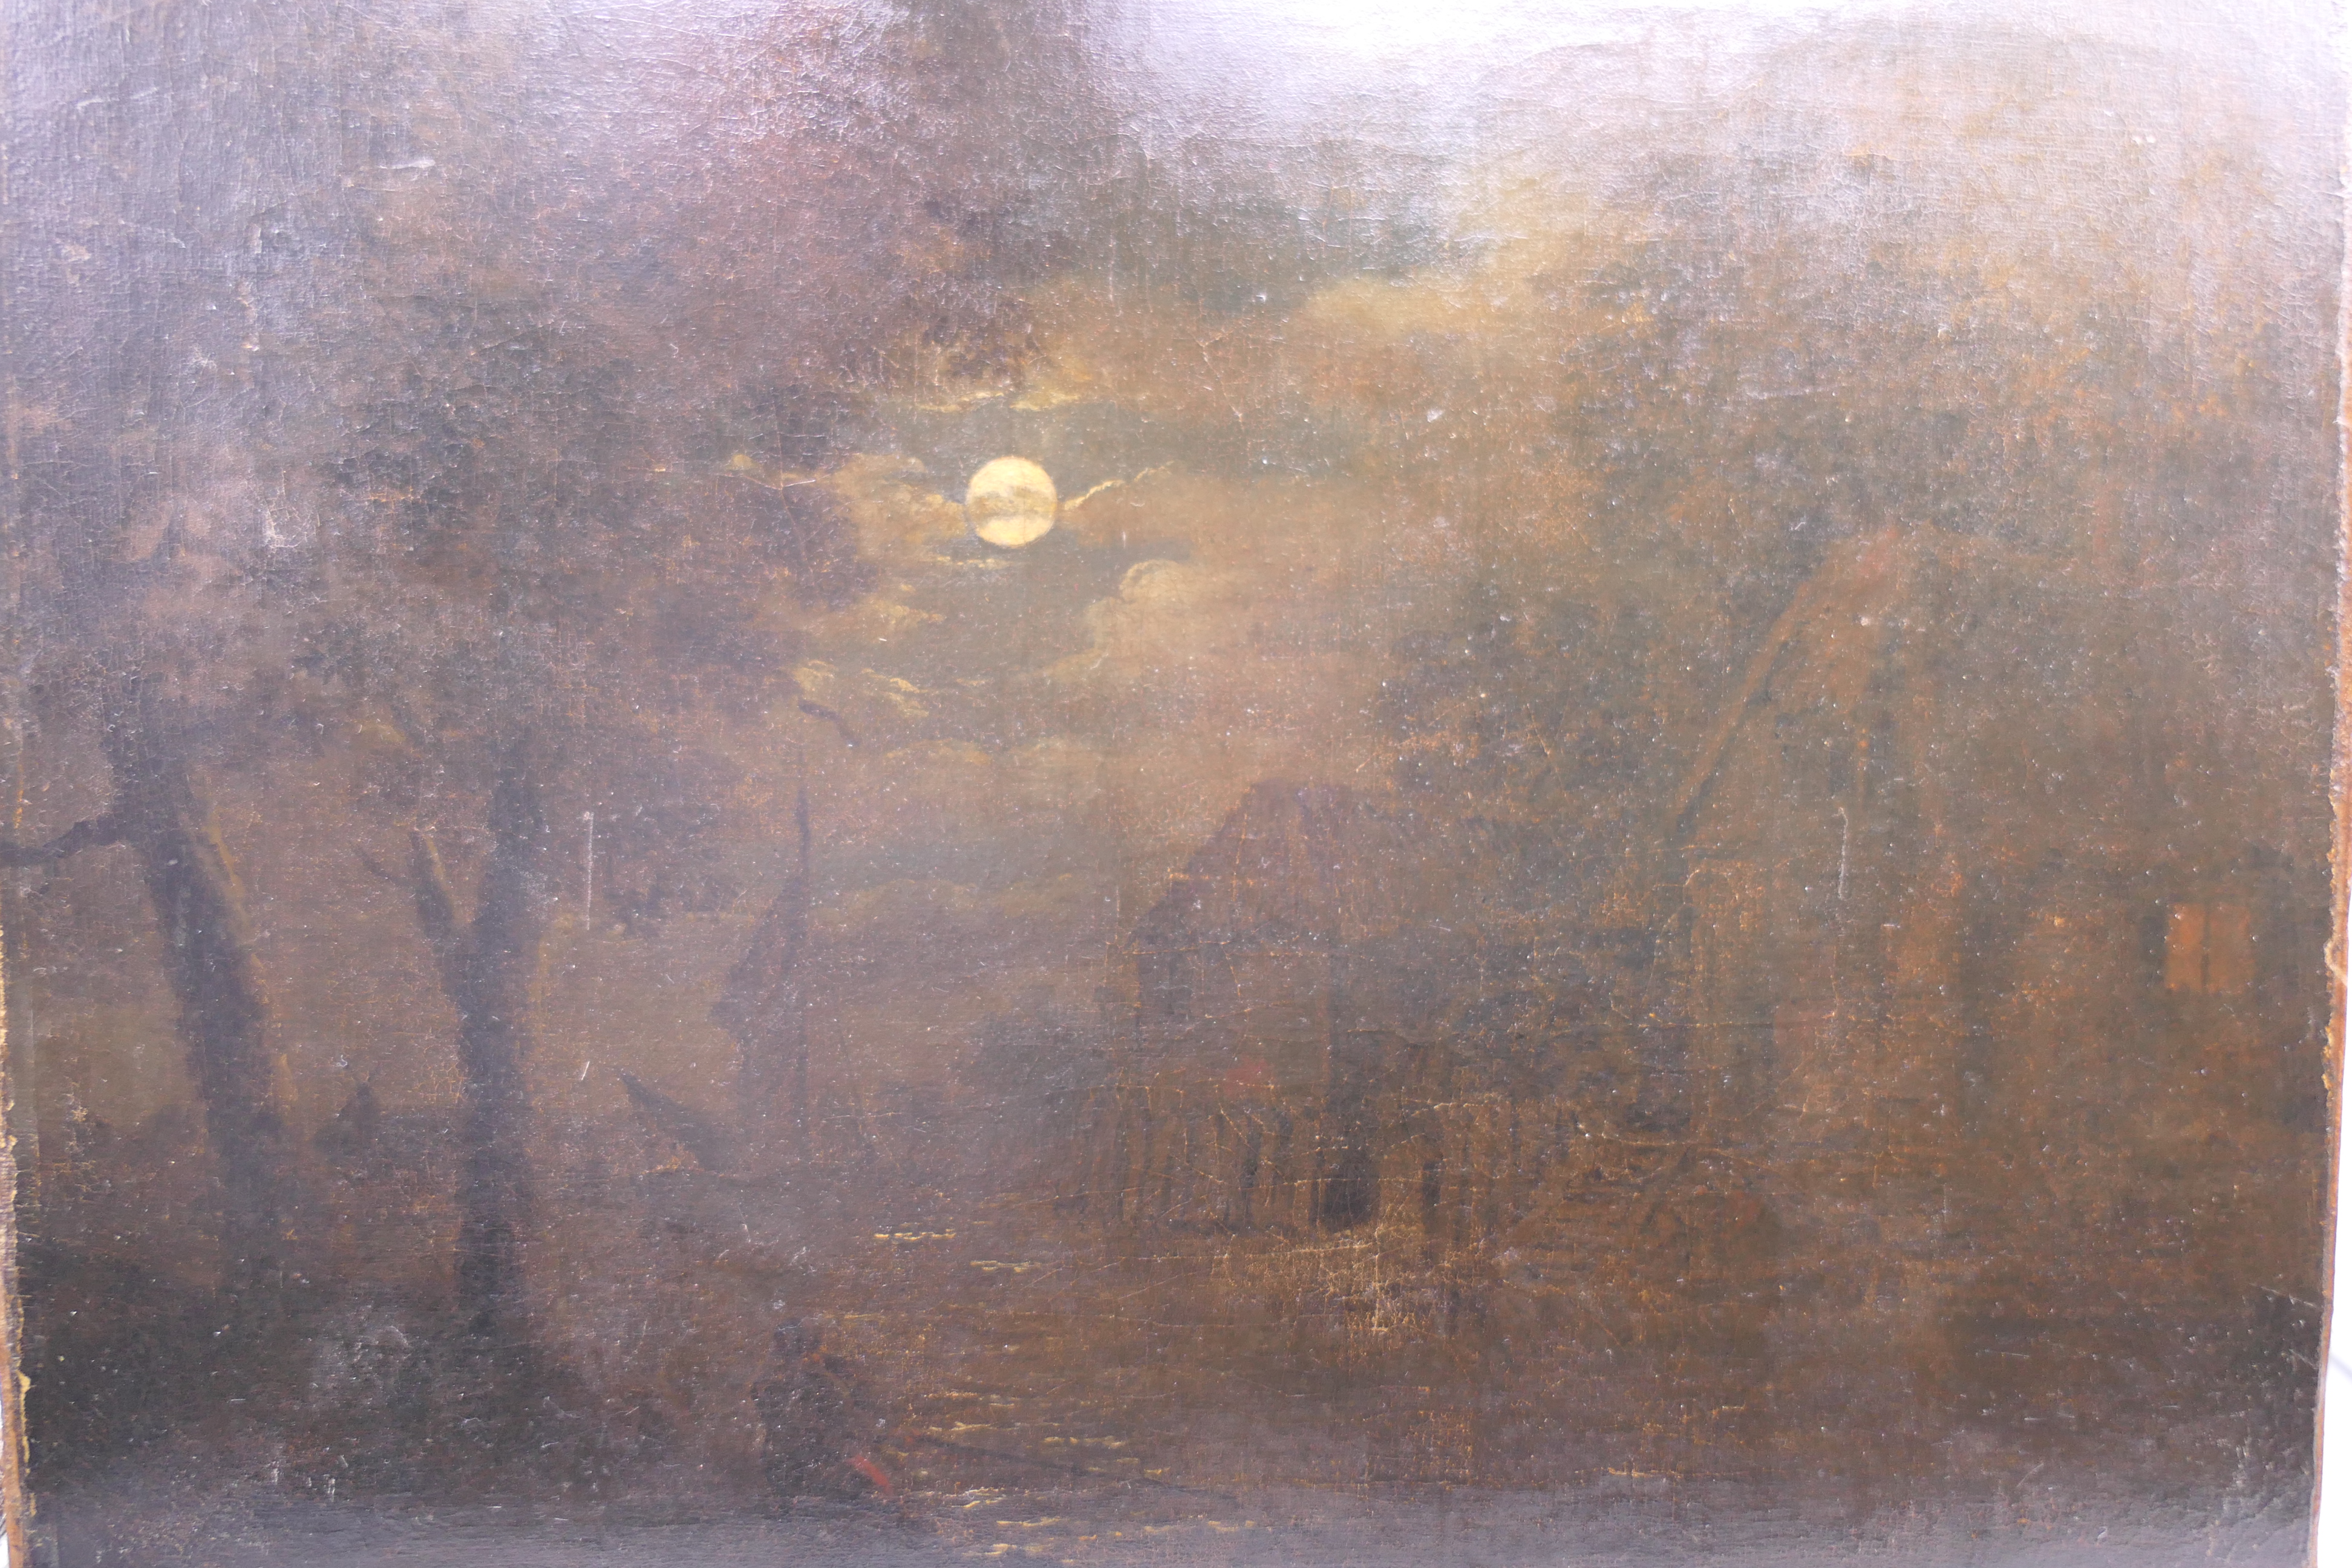 Follower of SEBASTIAN PETHER, Moonlight Scene, oil on canvas, unframed. 42.5 x 34 cm. - Image 11 of 12